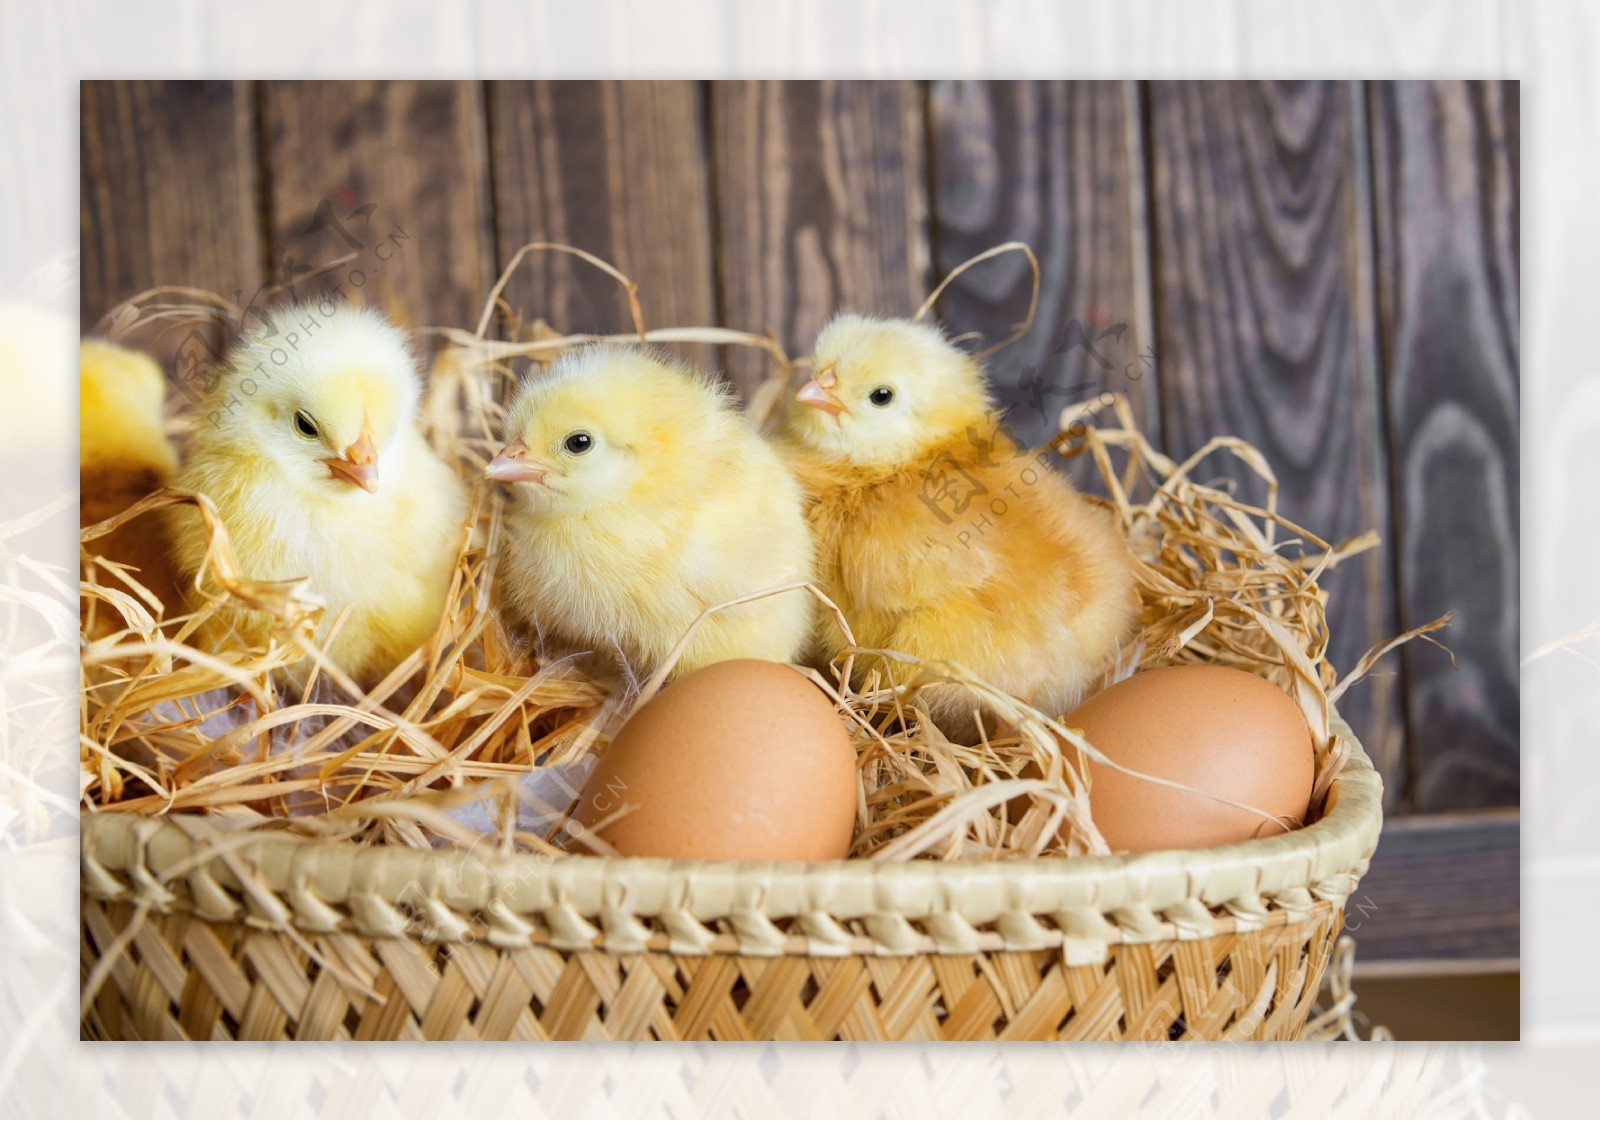 篮子里的小鸡和鸡蛋